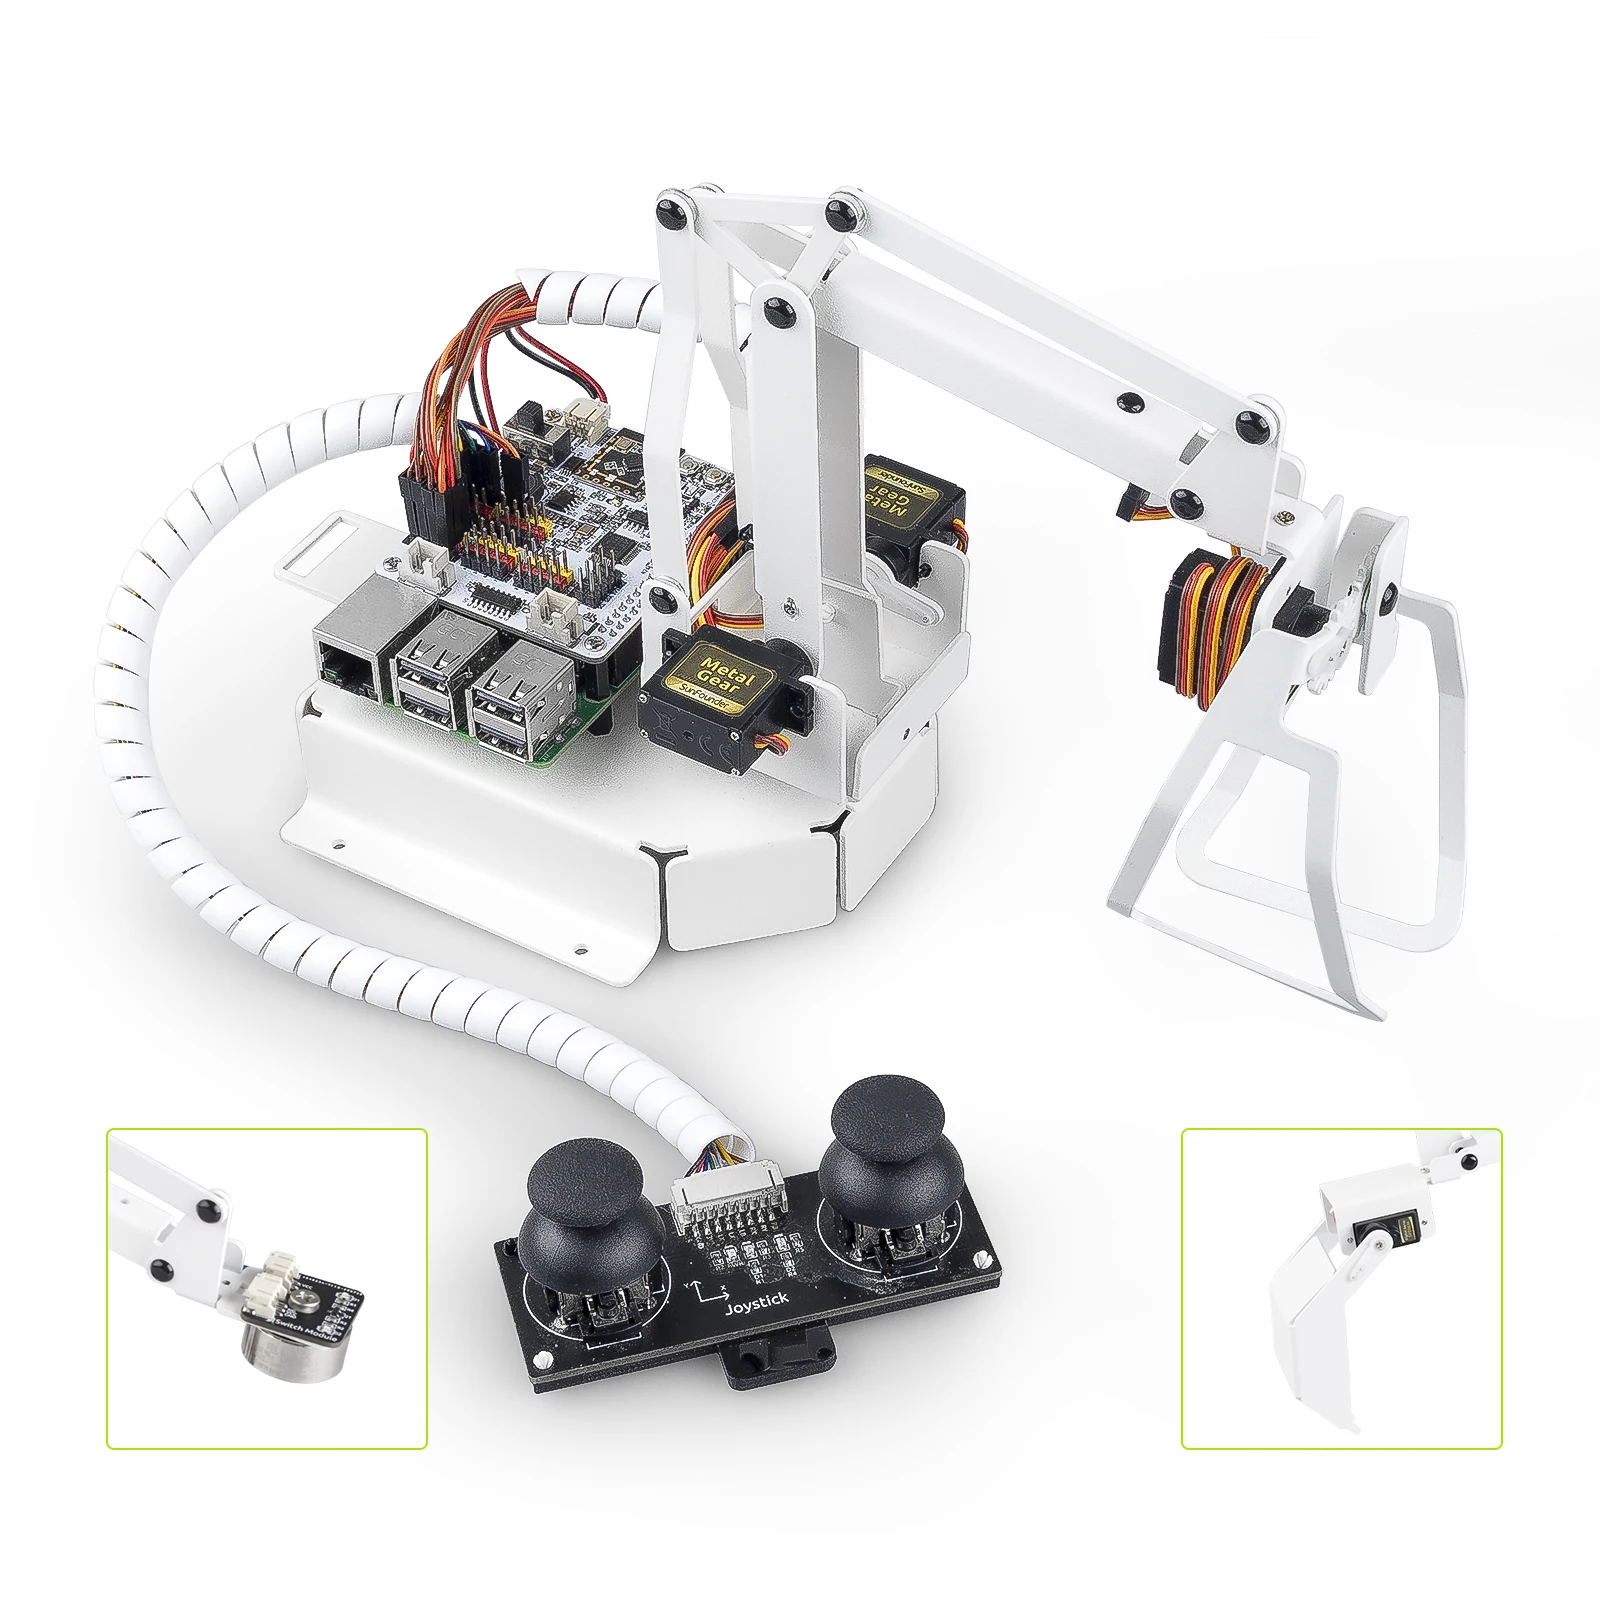 CC SunFounder 4 DOF Robot Arm Kit, Поддержка графического визуального программирования, Python, для Raspberry Pi 4B 3B + 3B